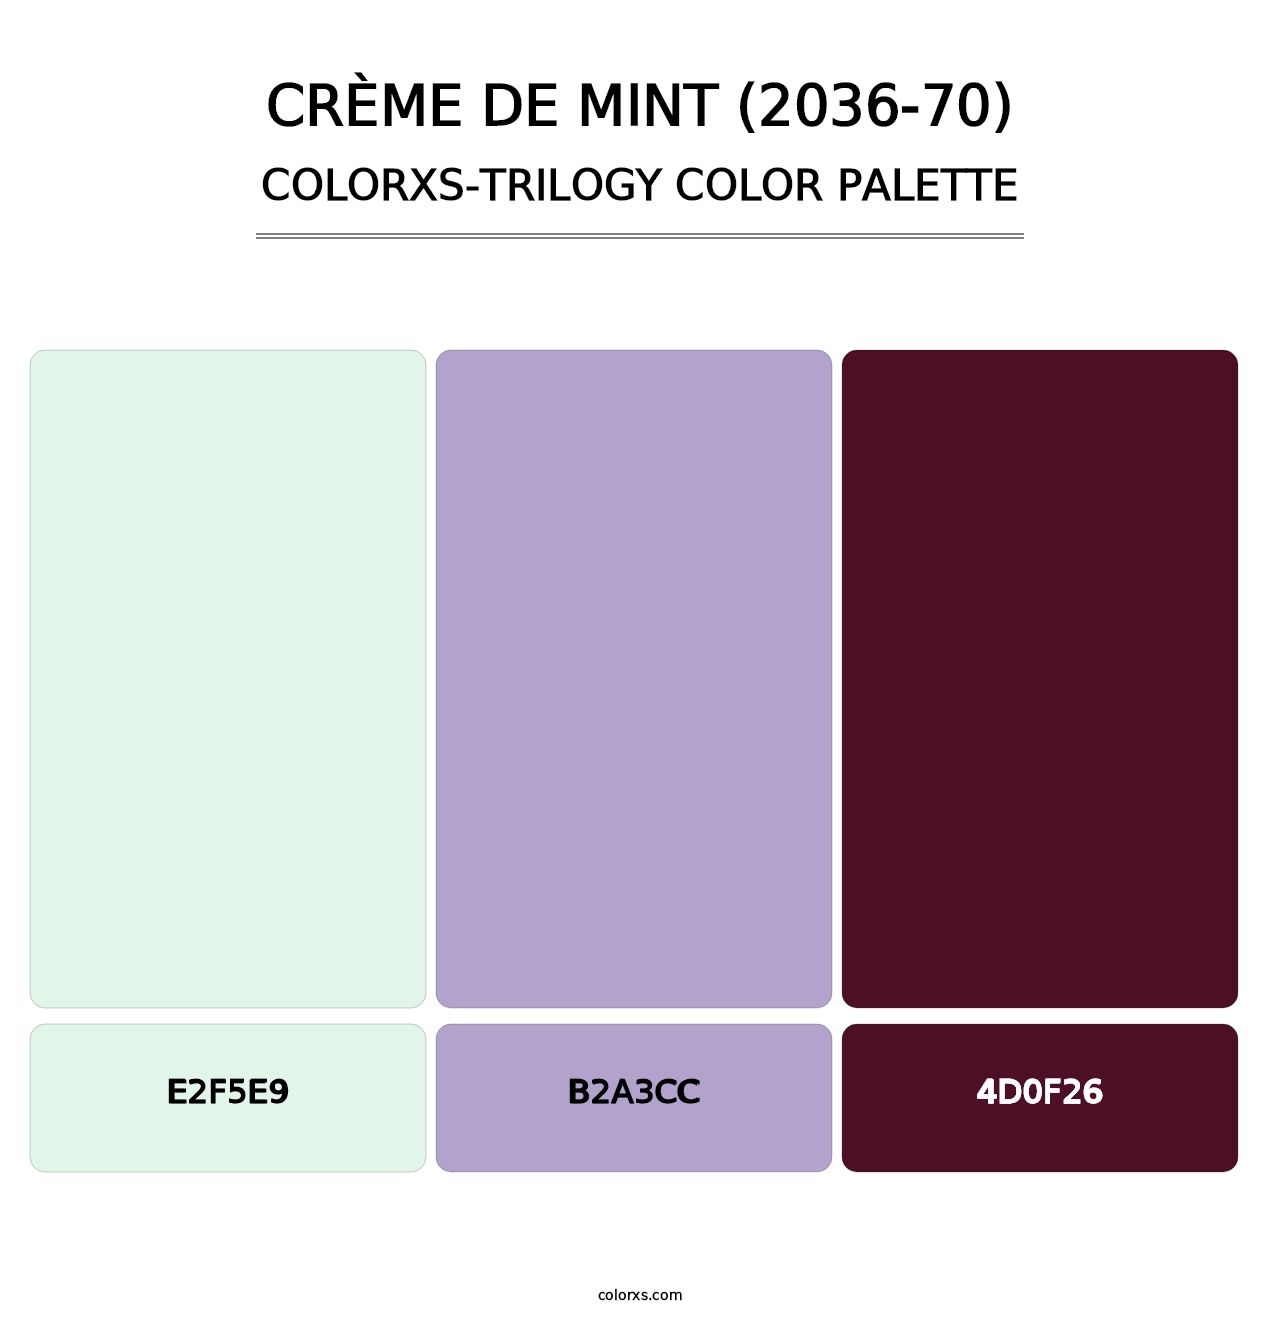 Crème de Mint (2036-70) - Colorxs Trilogy Palette